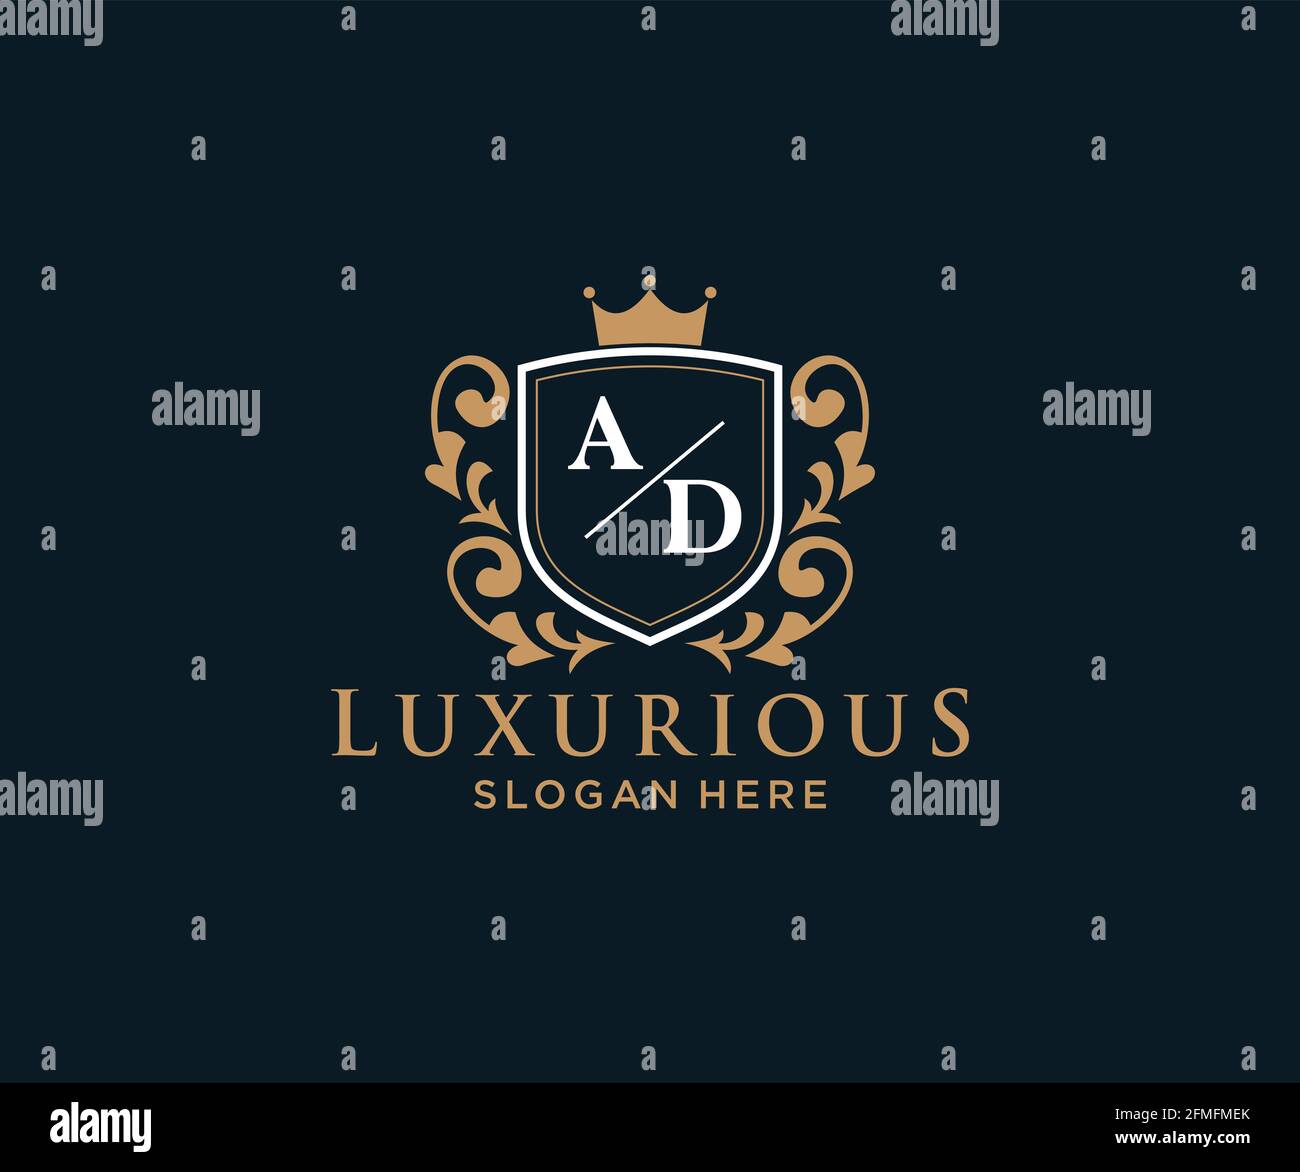 WERBEBRIEF Royal Luxury Logo Vorlage in Vektorgrafik für Restaurant, Royalty, Boutique, Cafe, Hotel, Heraldisch, Schmuck, Mode und andere Vektor illustrr Stock Vektor